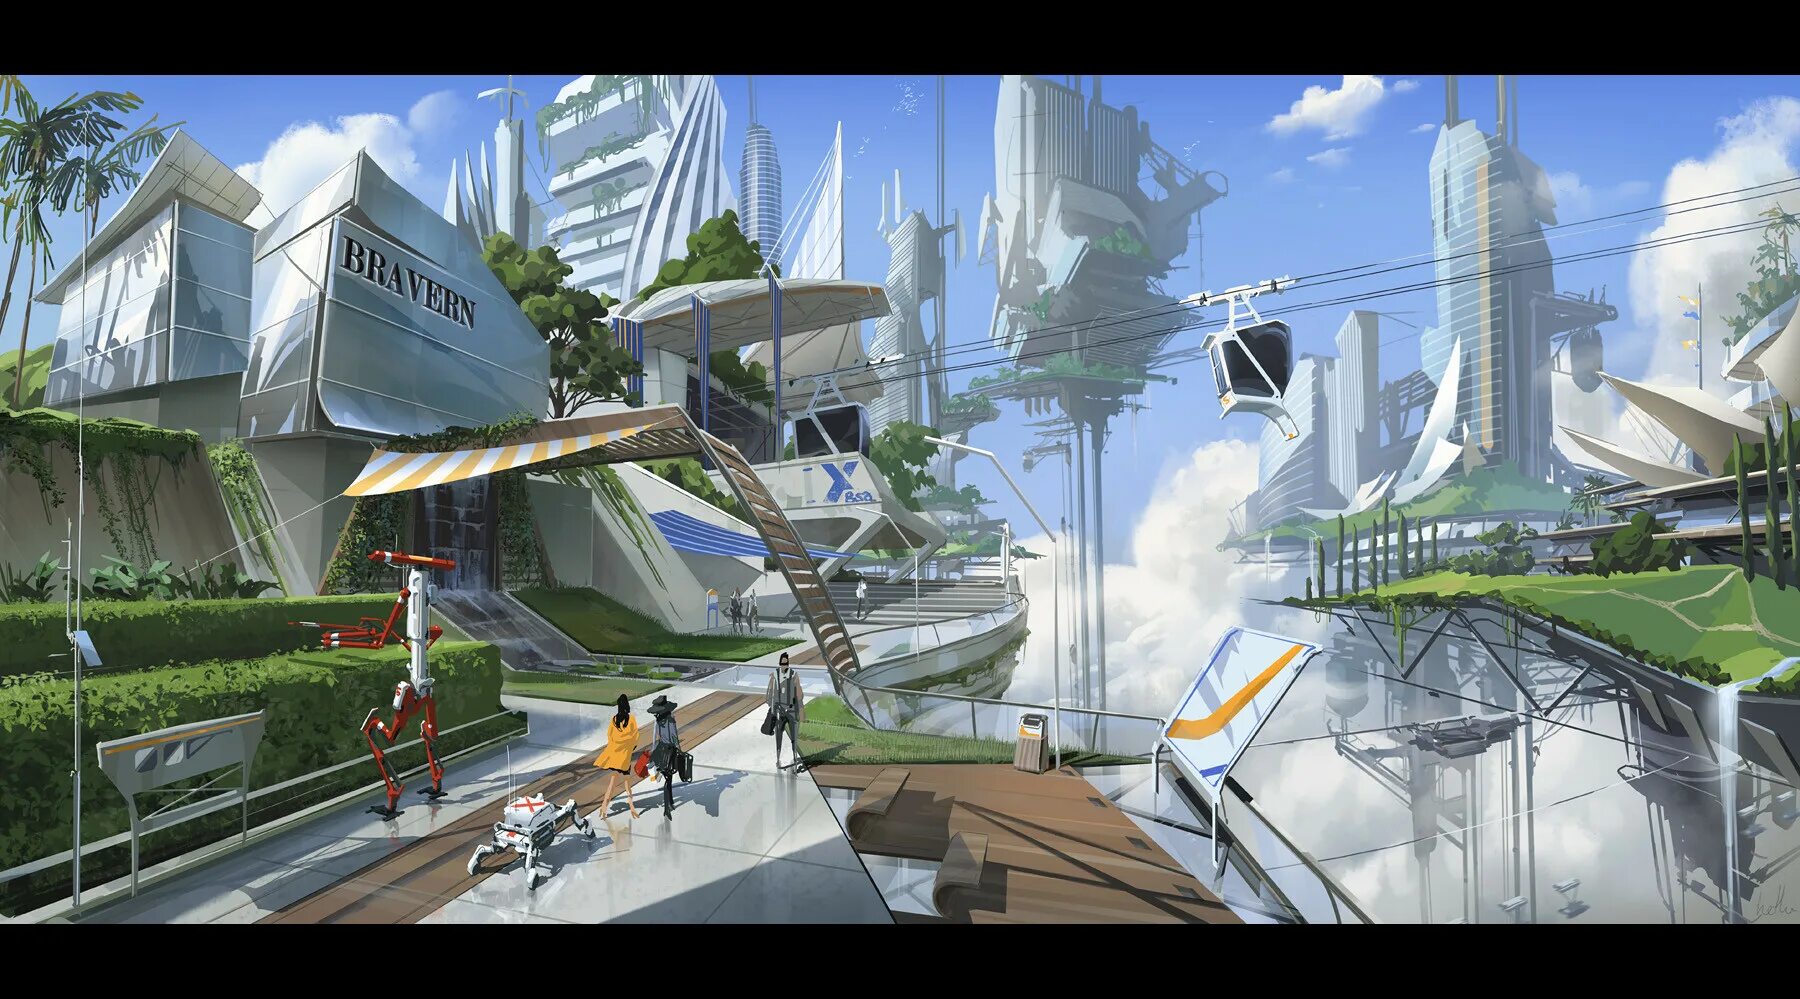 Будущее г. Мишель РАГОН города будущего. Город будущего концепт. Высокотехнологичный город будущего. Обои на рабочий стол город будущего.